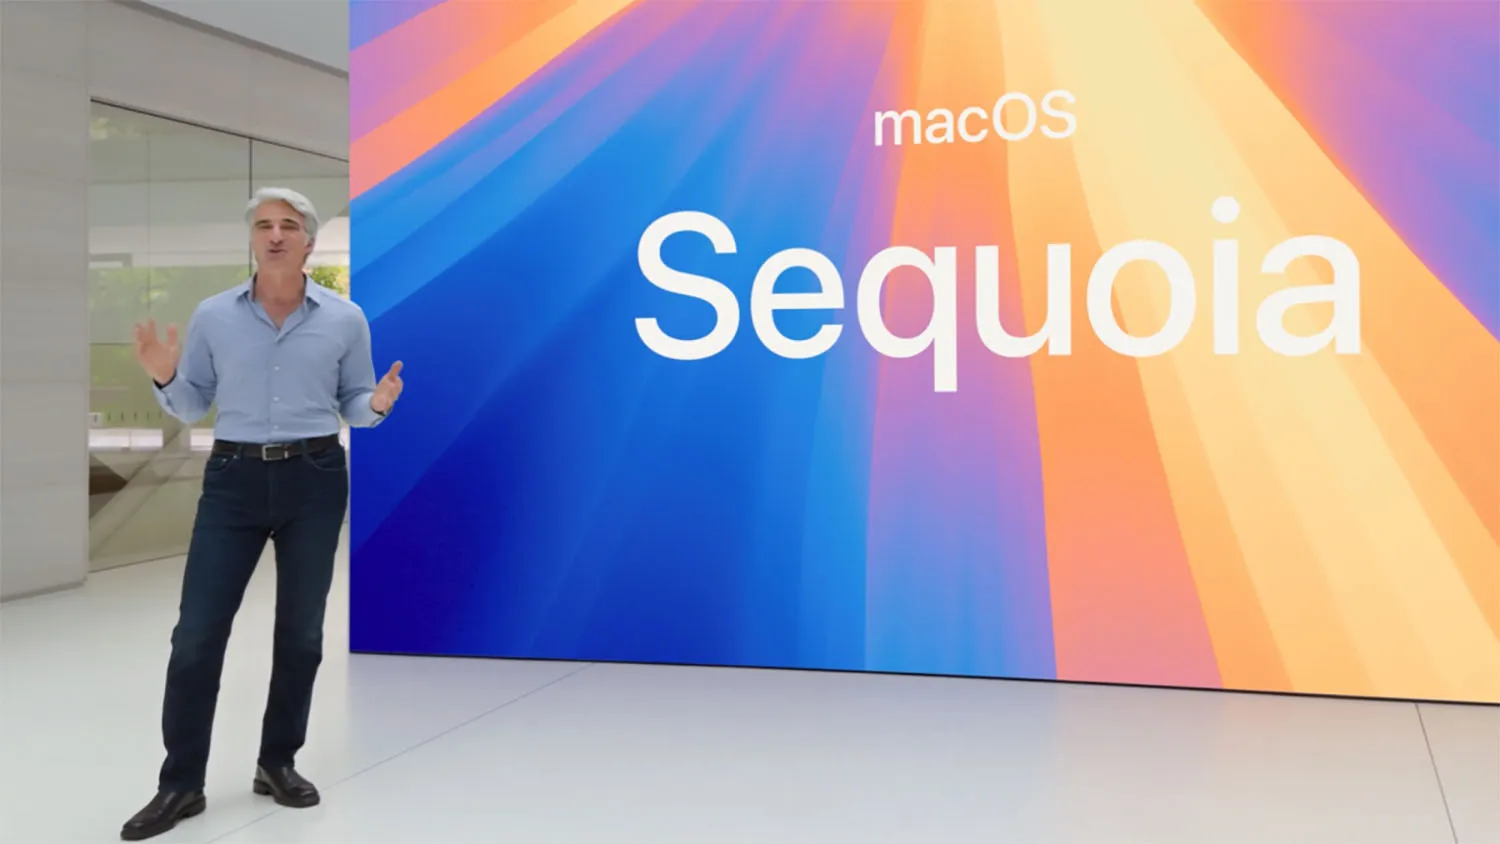 macOS Sequoia від Apple: огляд нових функцій та можливостей